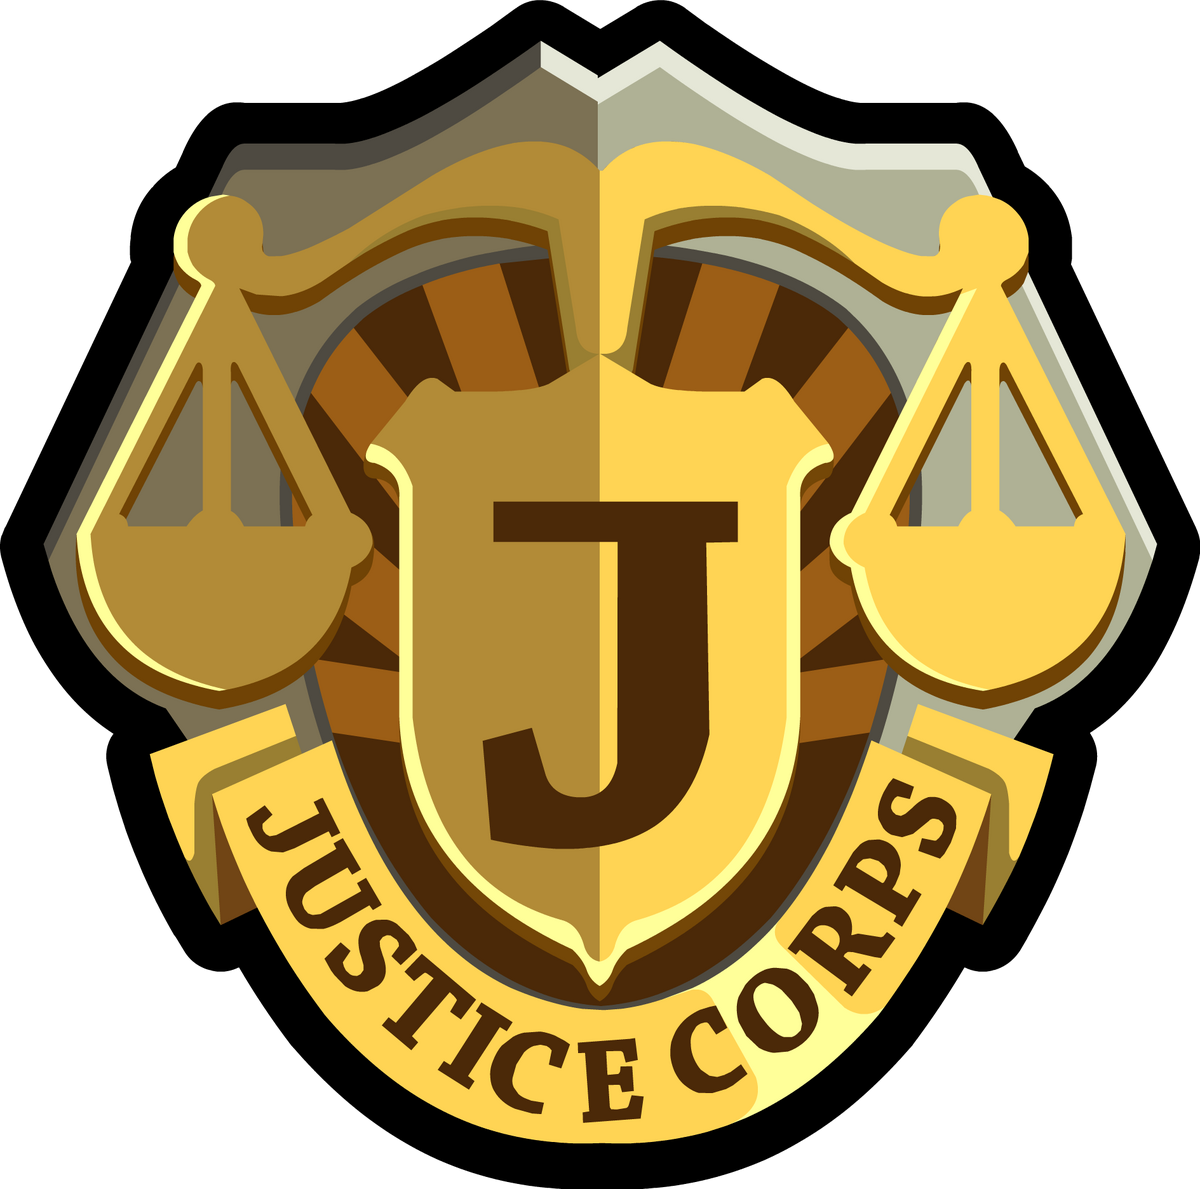 Justice case. Department of Justice. ICJ logo.